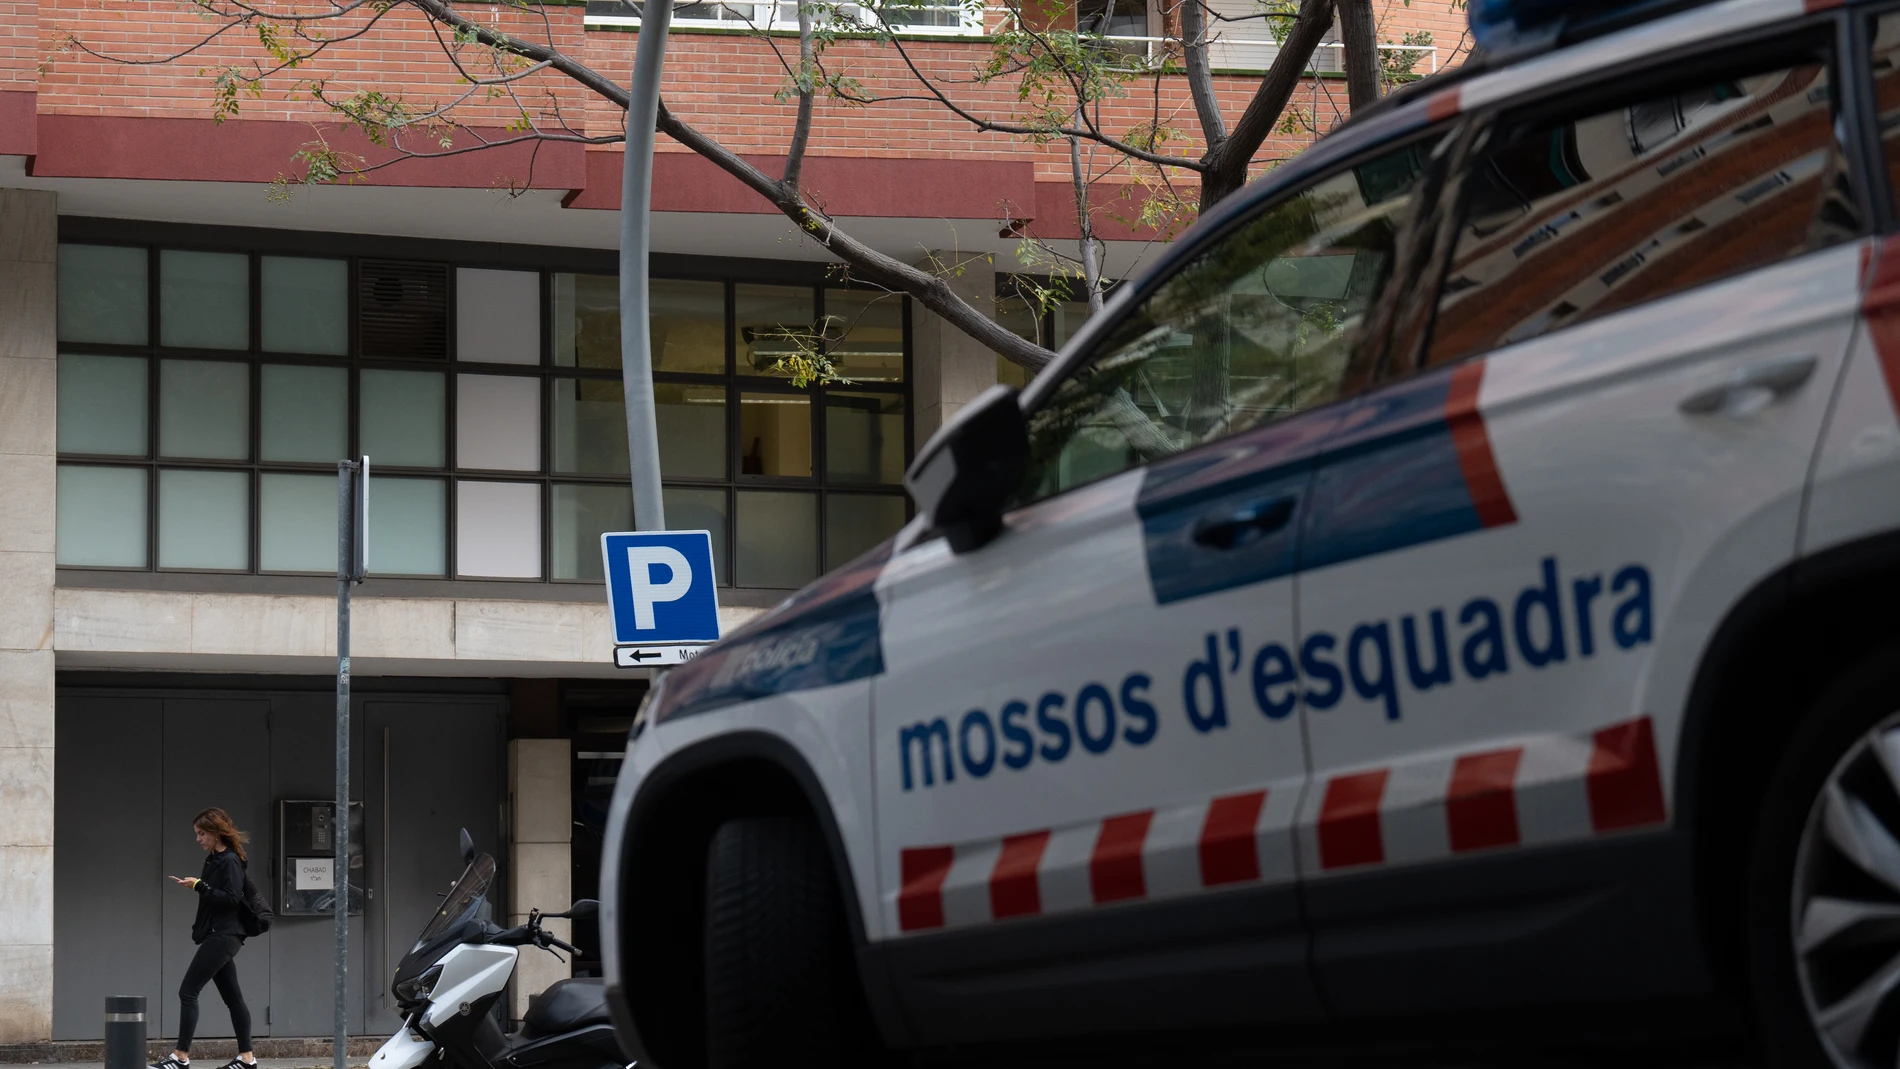 La Guardia Urbana de Figueres (Girona) abate a un vecino que disparaba con una escopeta en la calle